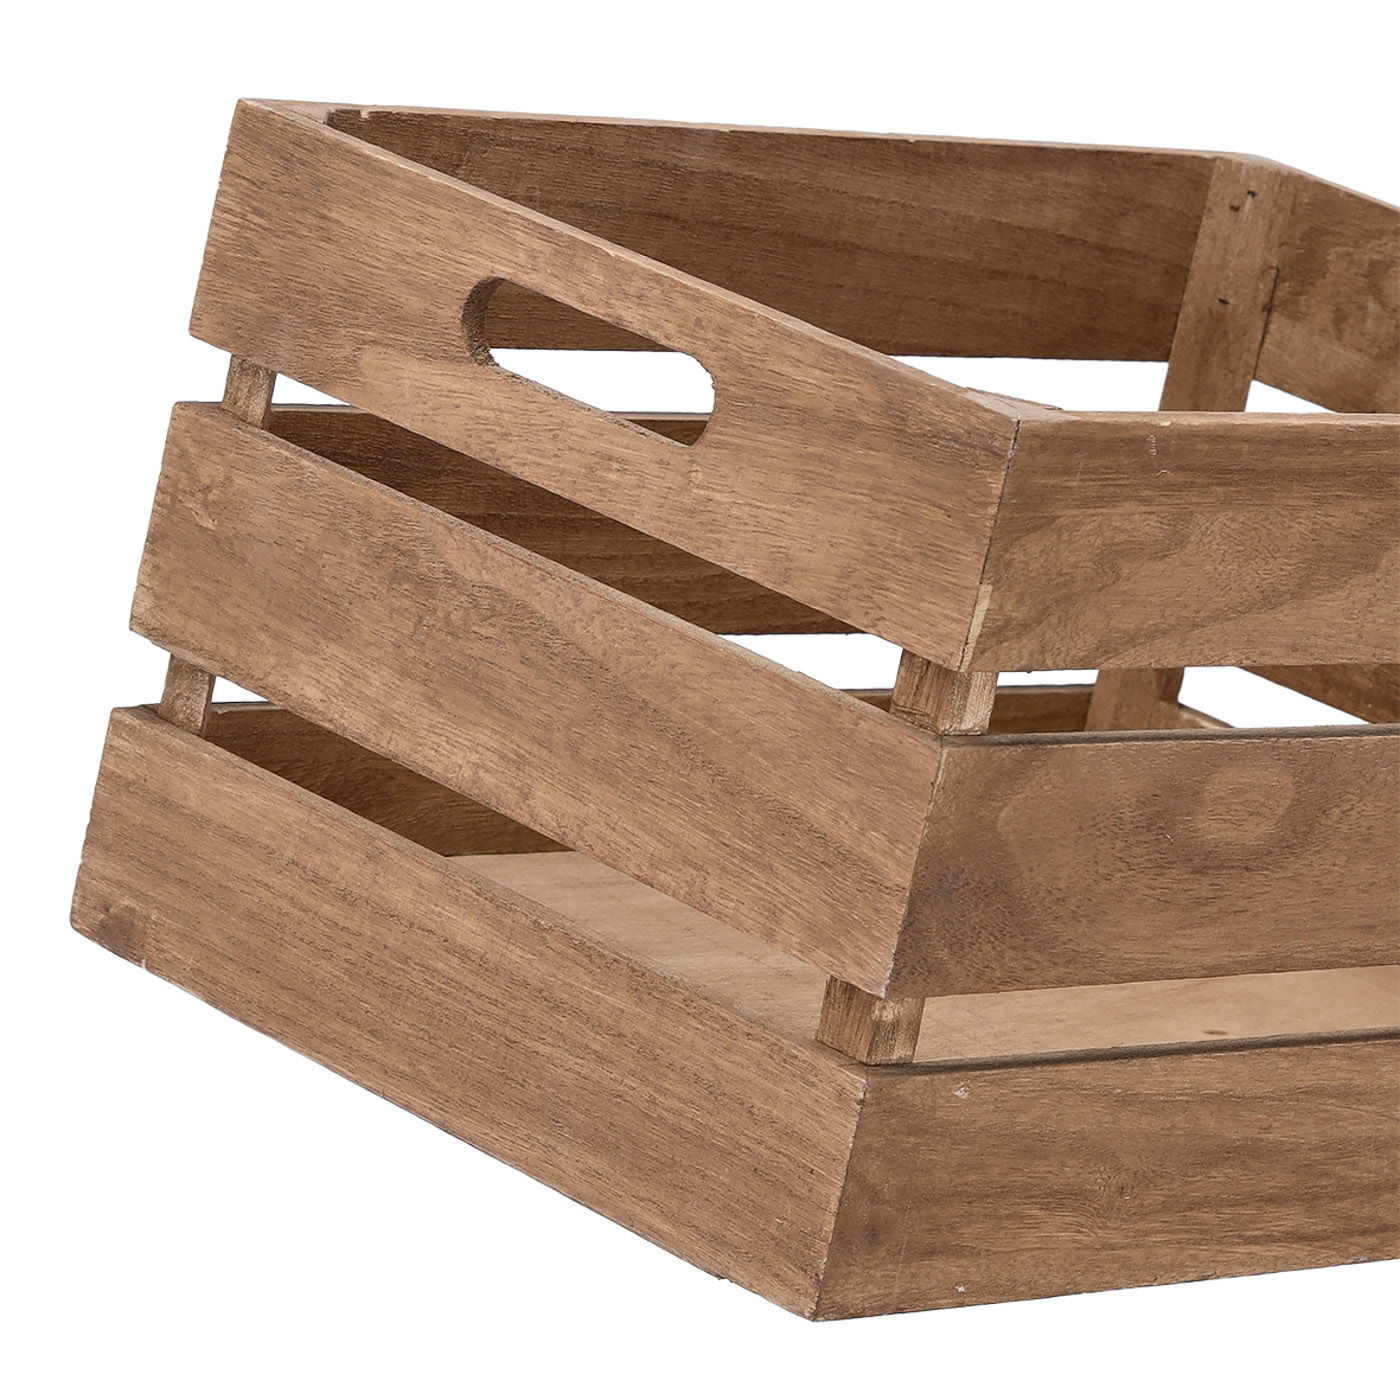 Aufbewahrungs-Kiste, Holz lackiert, 35x25x20 cm. Farbe: natur. Diese praktische Aufbewahrungskiste wurde aus hochwertigem Holz gefertigt und